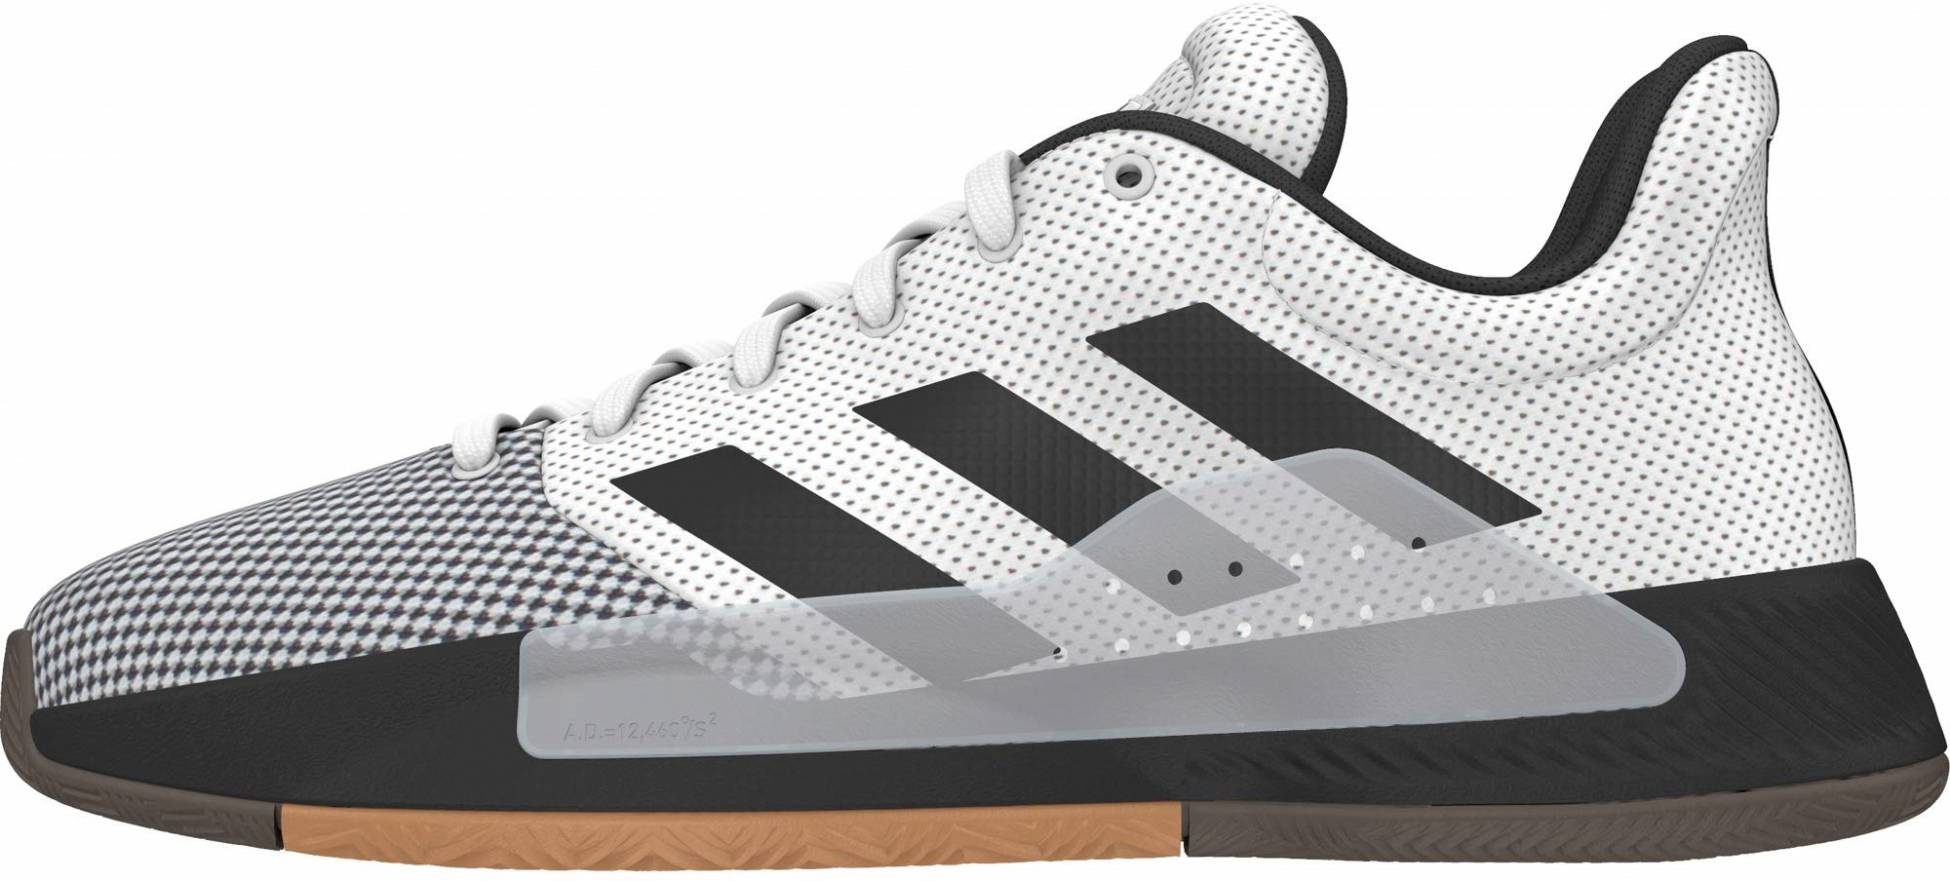 وفقا لذلك الإيجار البرد Adidas Low Basketball Shoes Plasto Tech Com